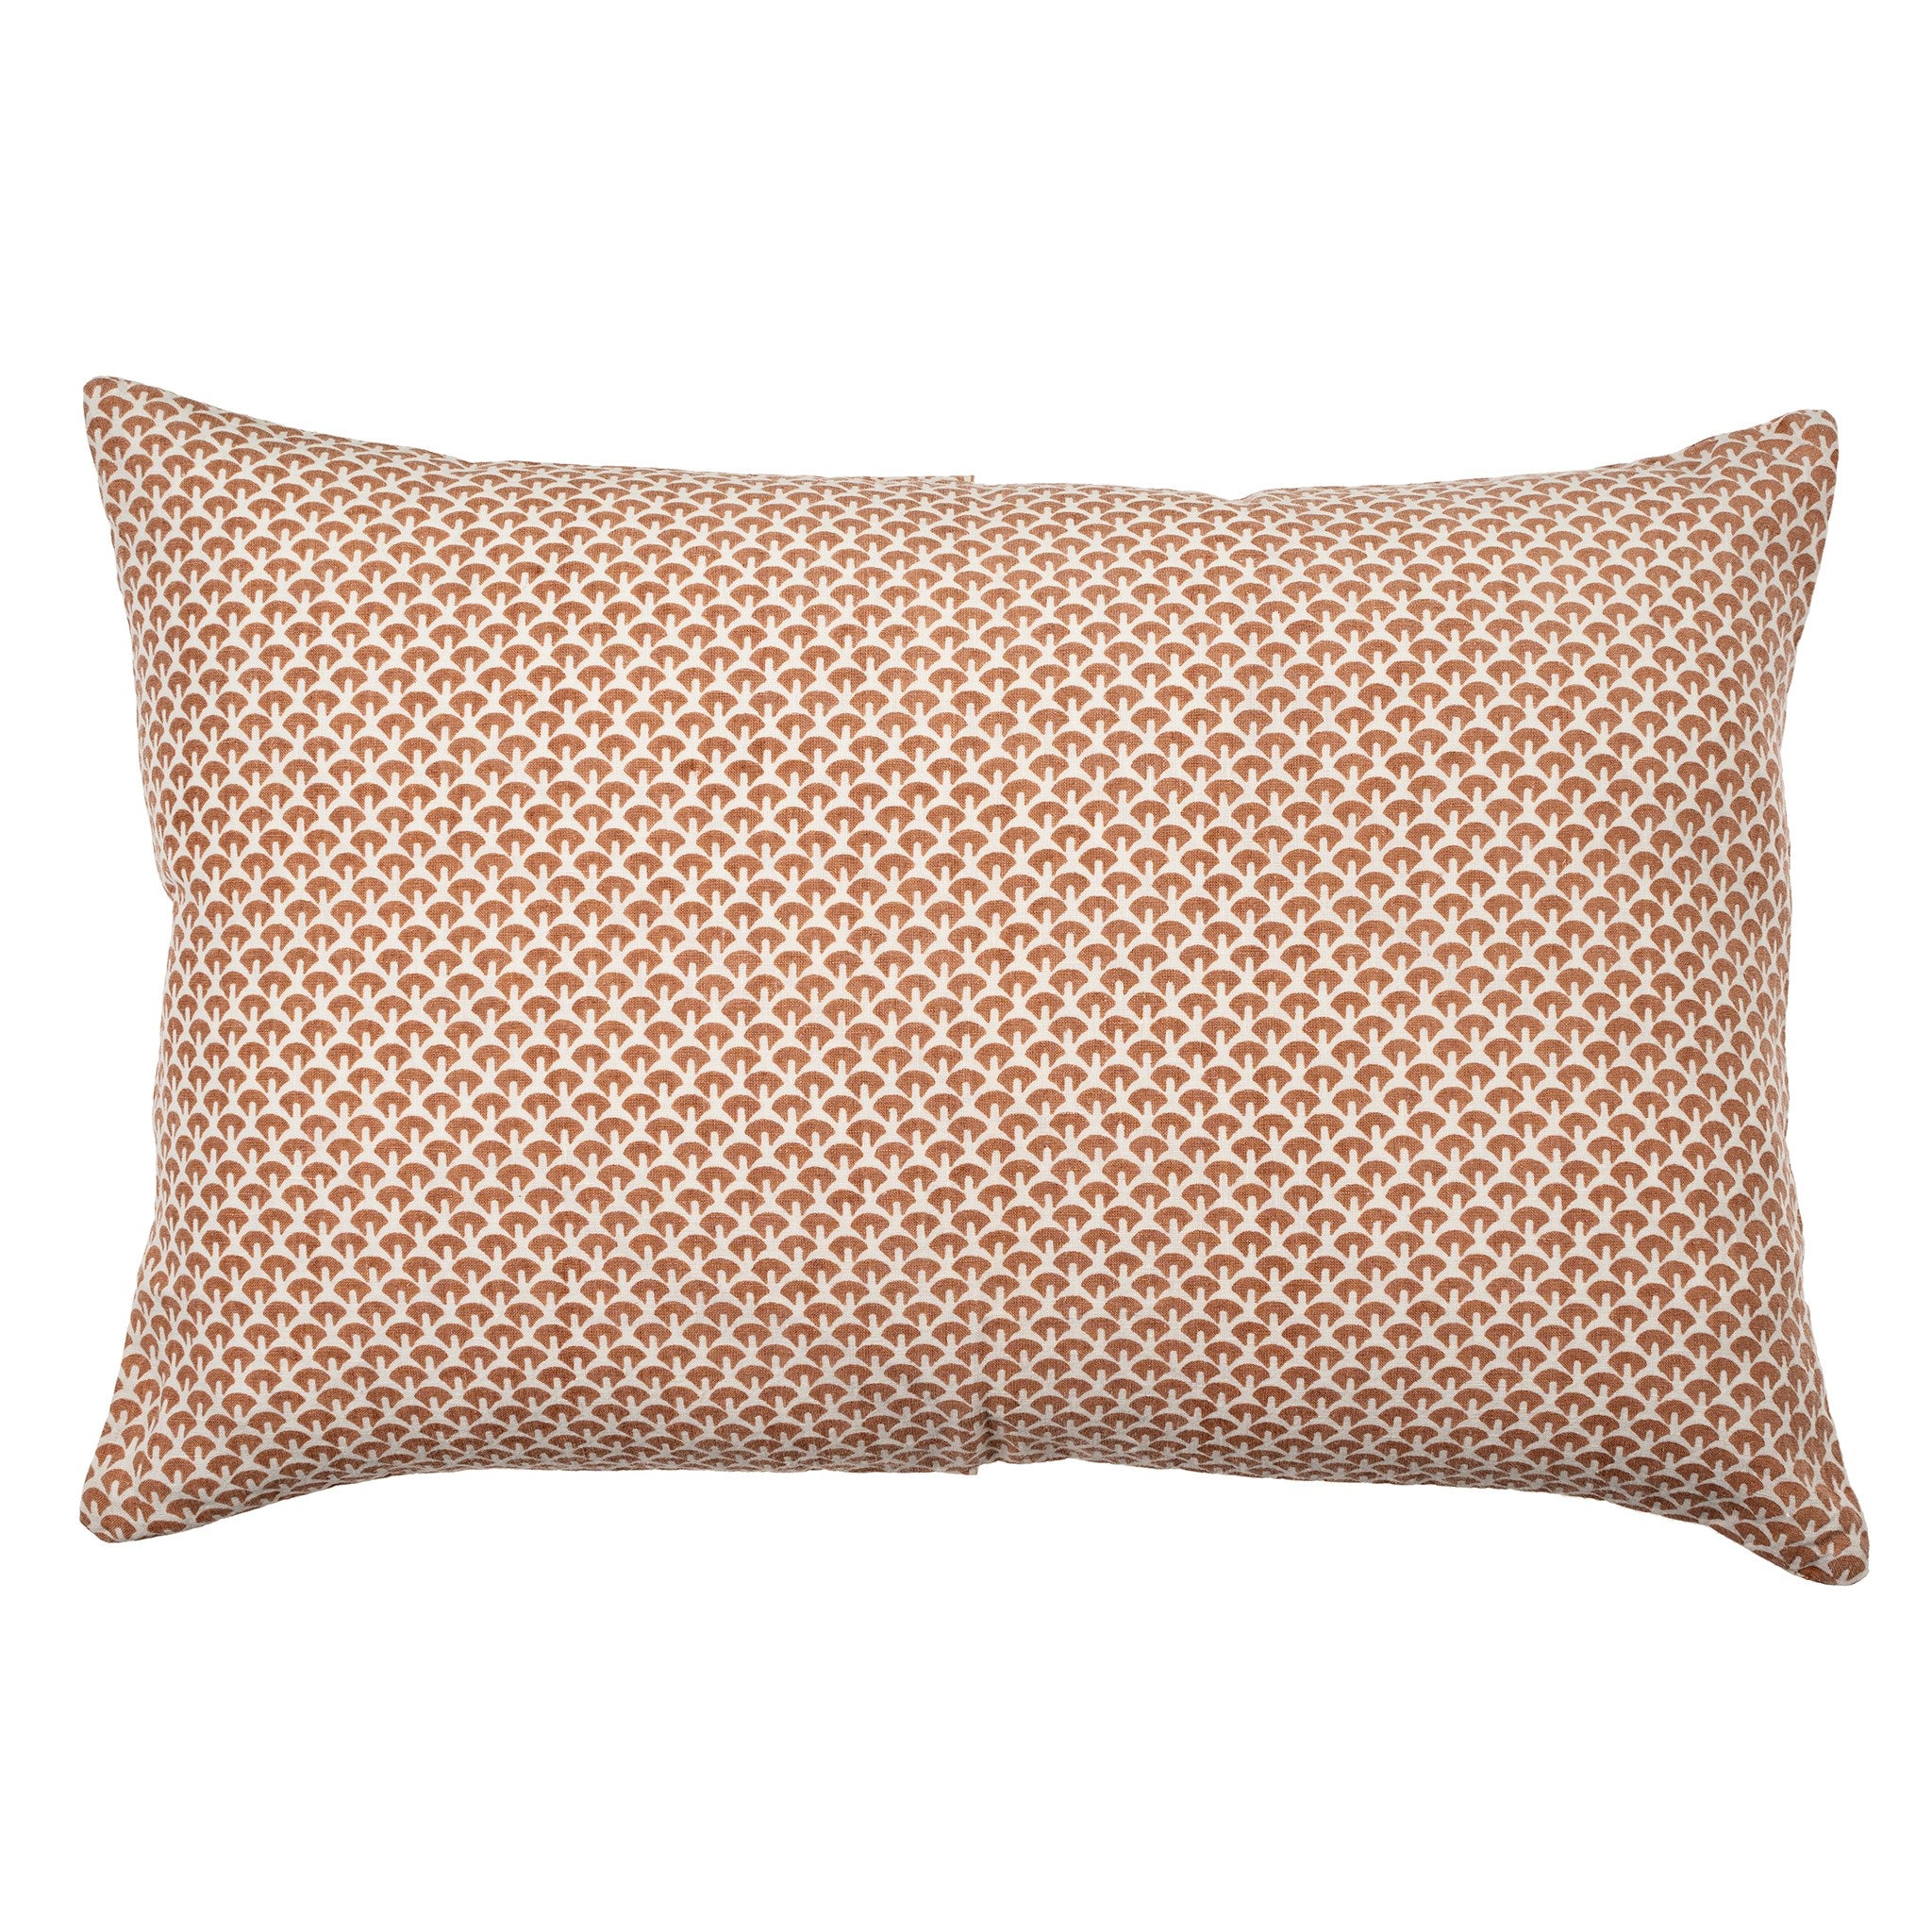 Saphira Pillow, Terracotta 16"x24"